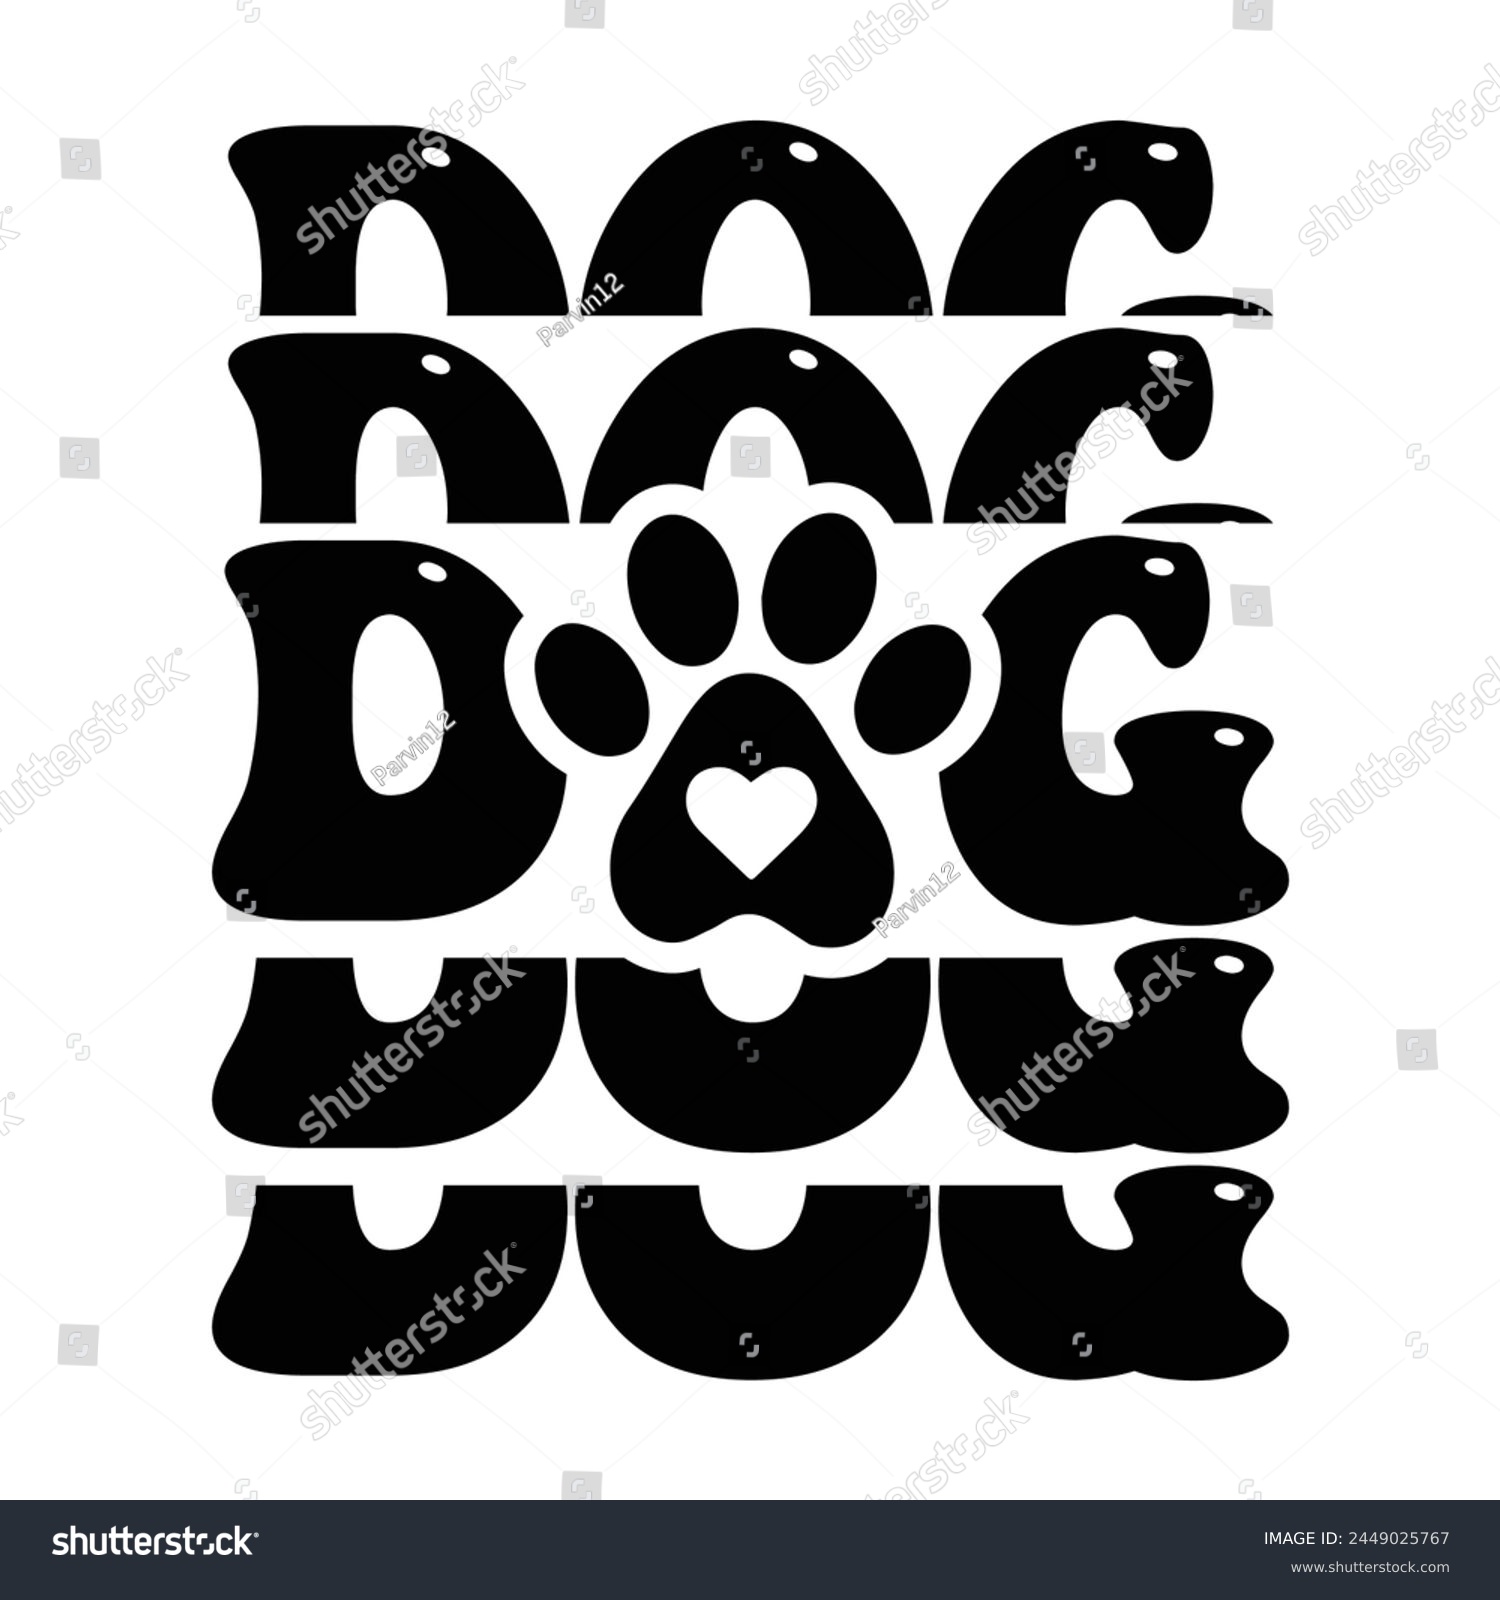 SVG of Dog funny vector design for sale svg